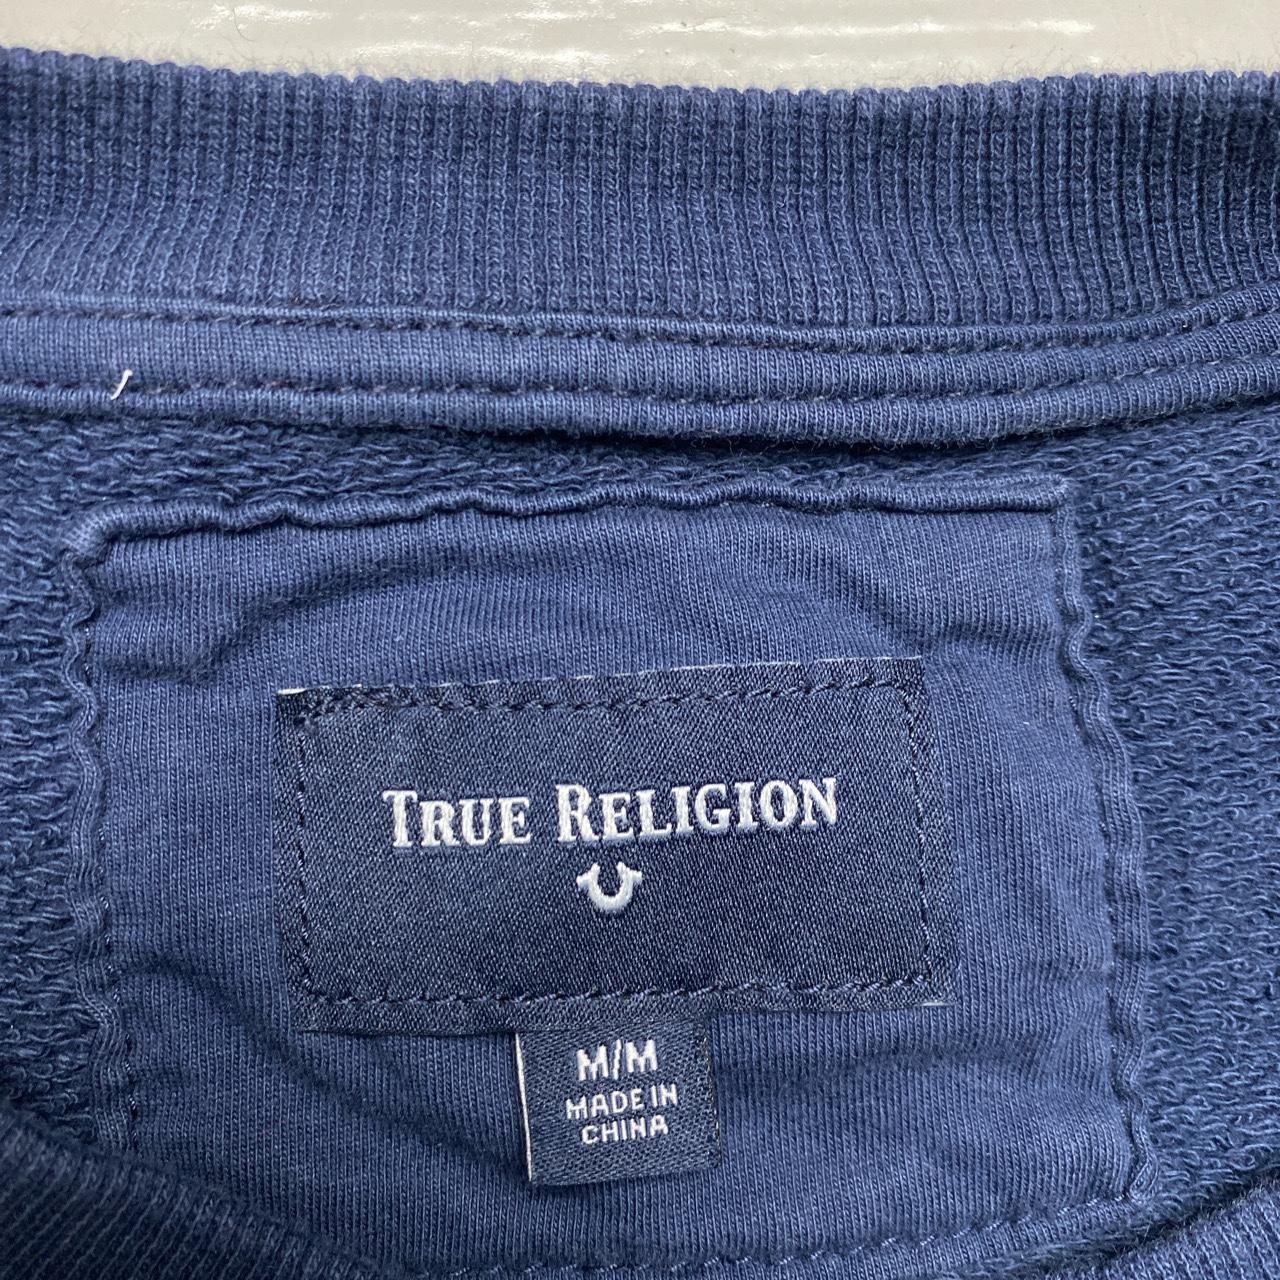 True Religion Navy and Gold Jumper